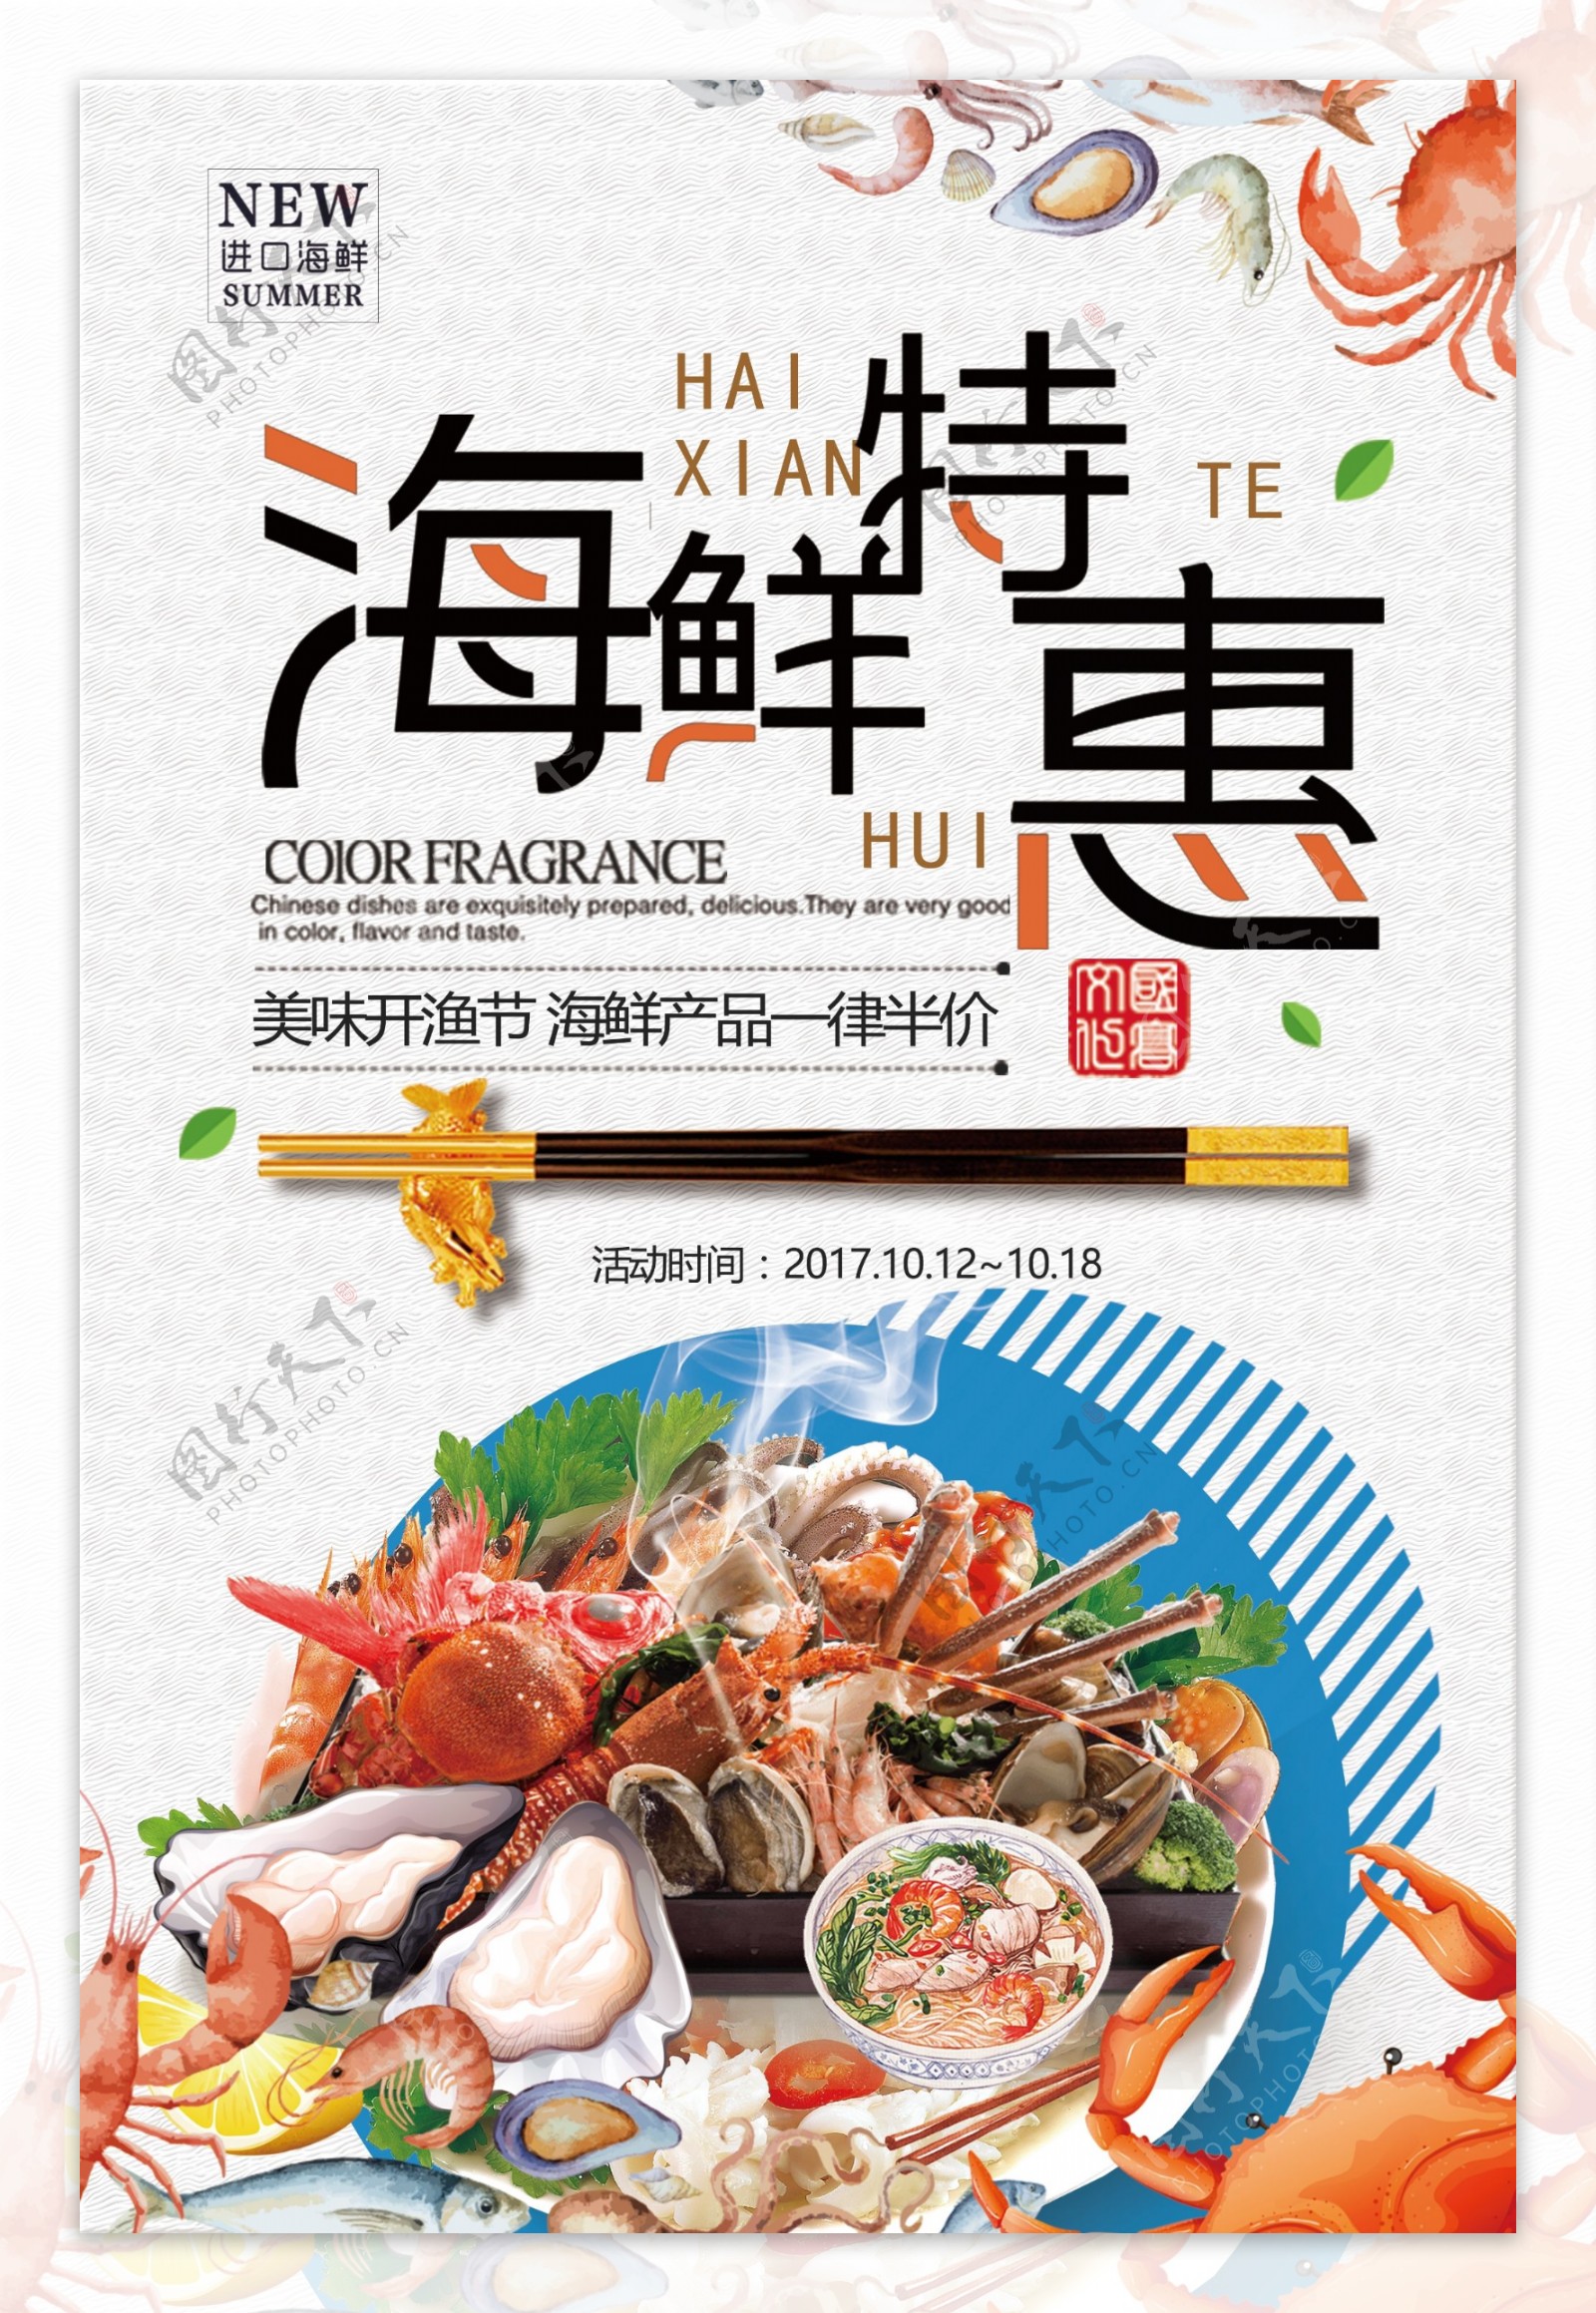 2018年中国风卡通海鲜特惠餐饮海报